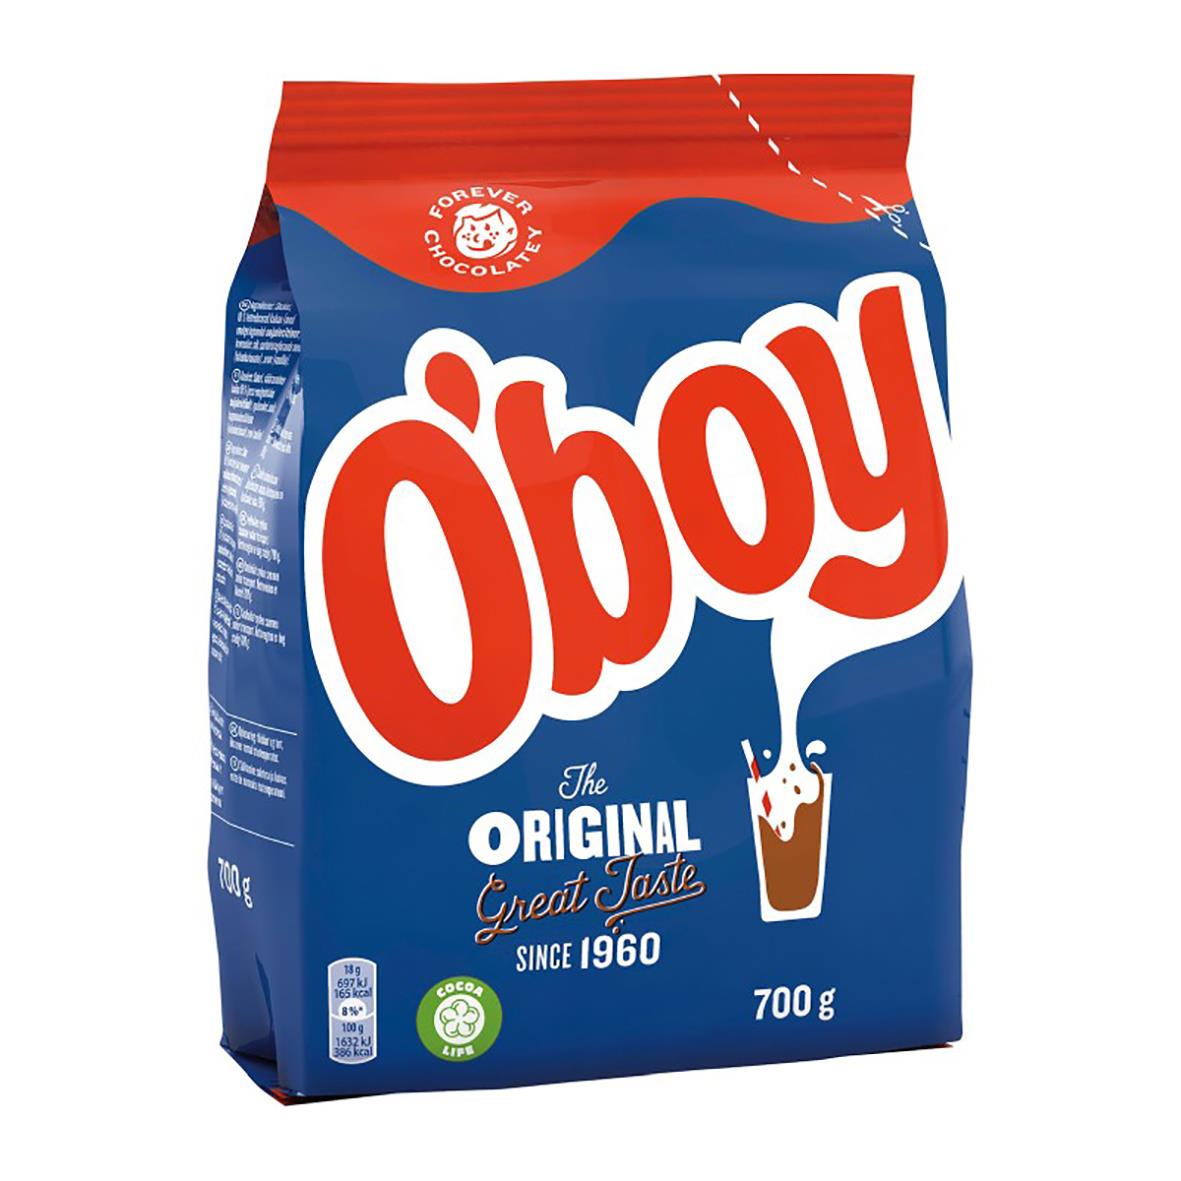 Chokladdryck Oboy 700g